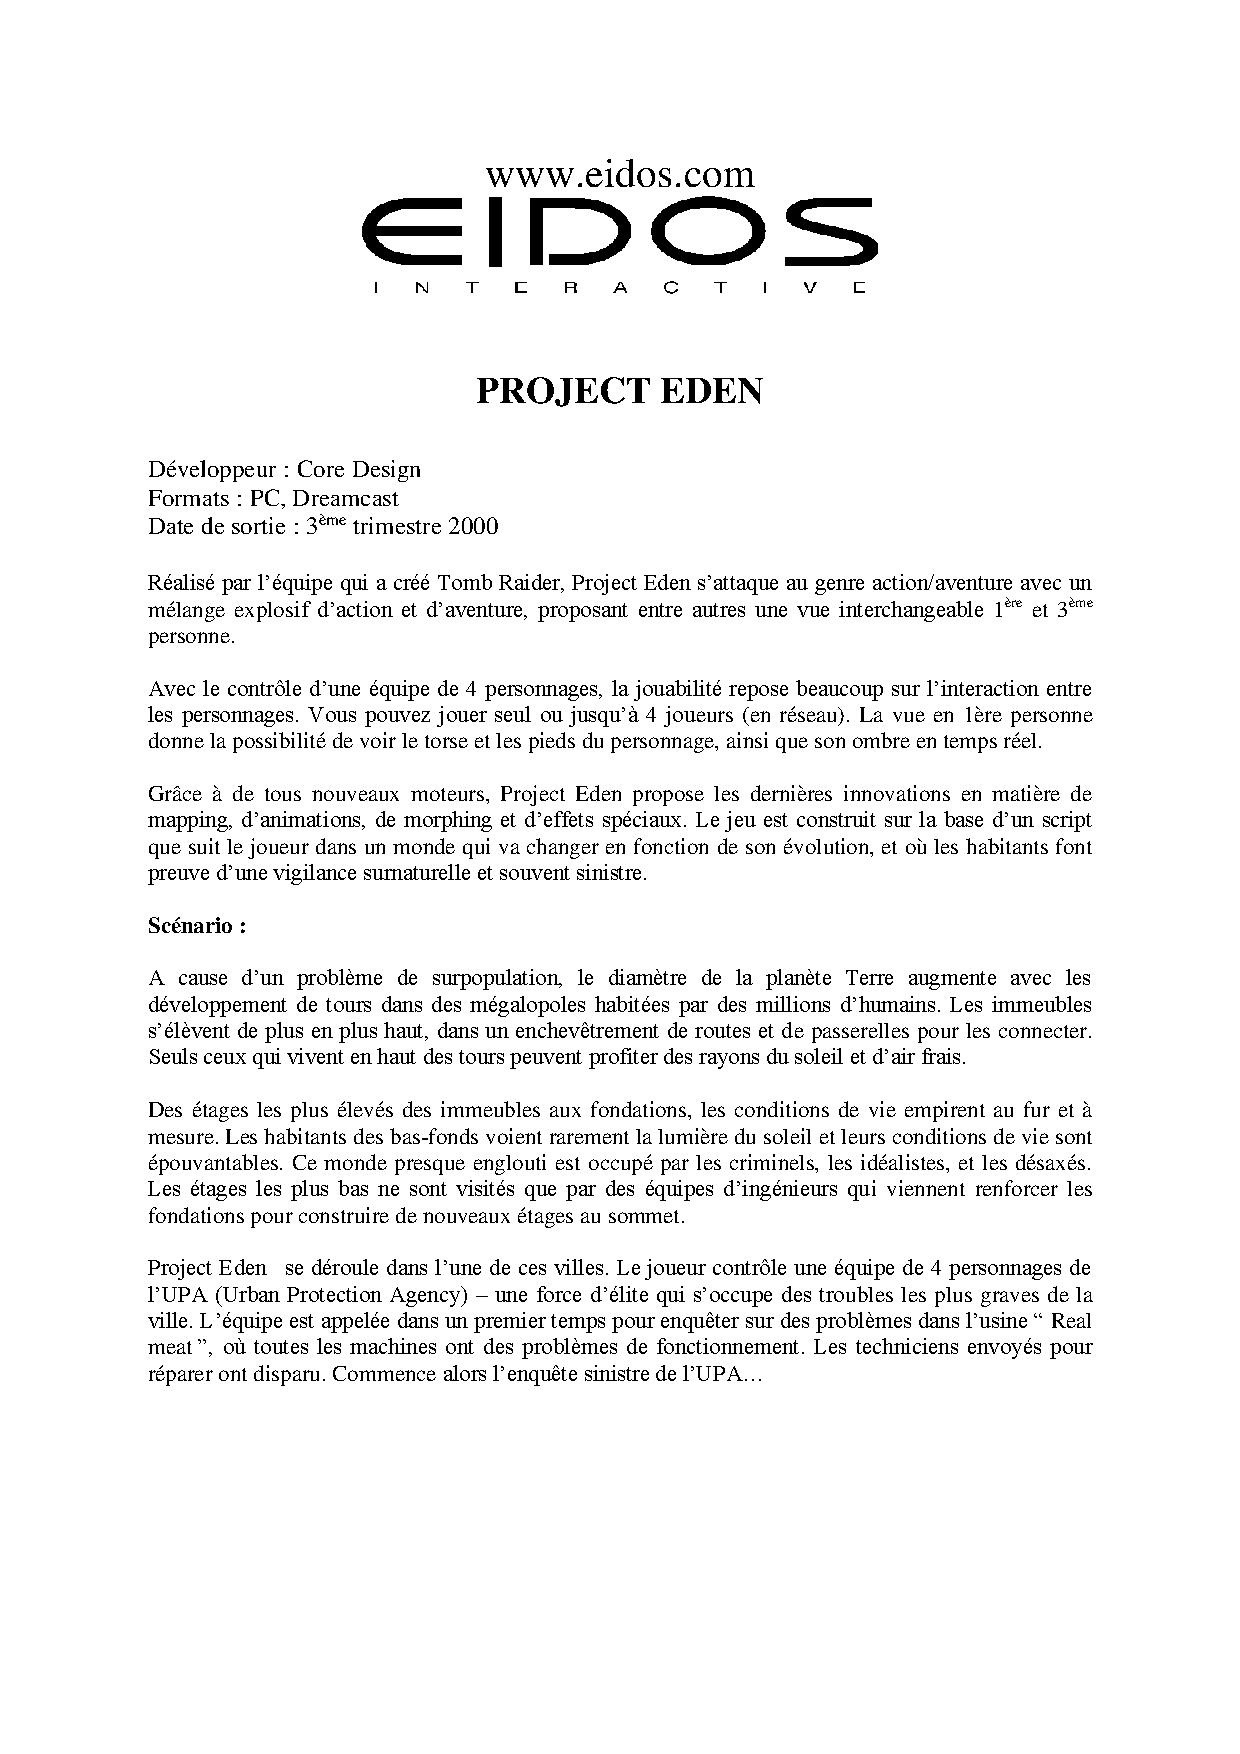 EidosE32000DPK ProjectEden FR projecte.pdf